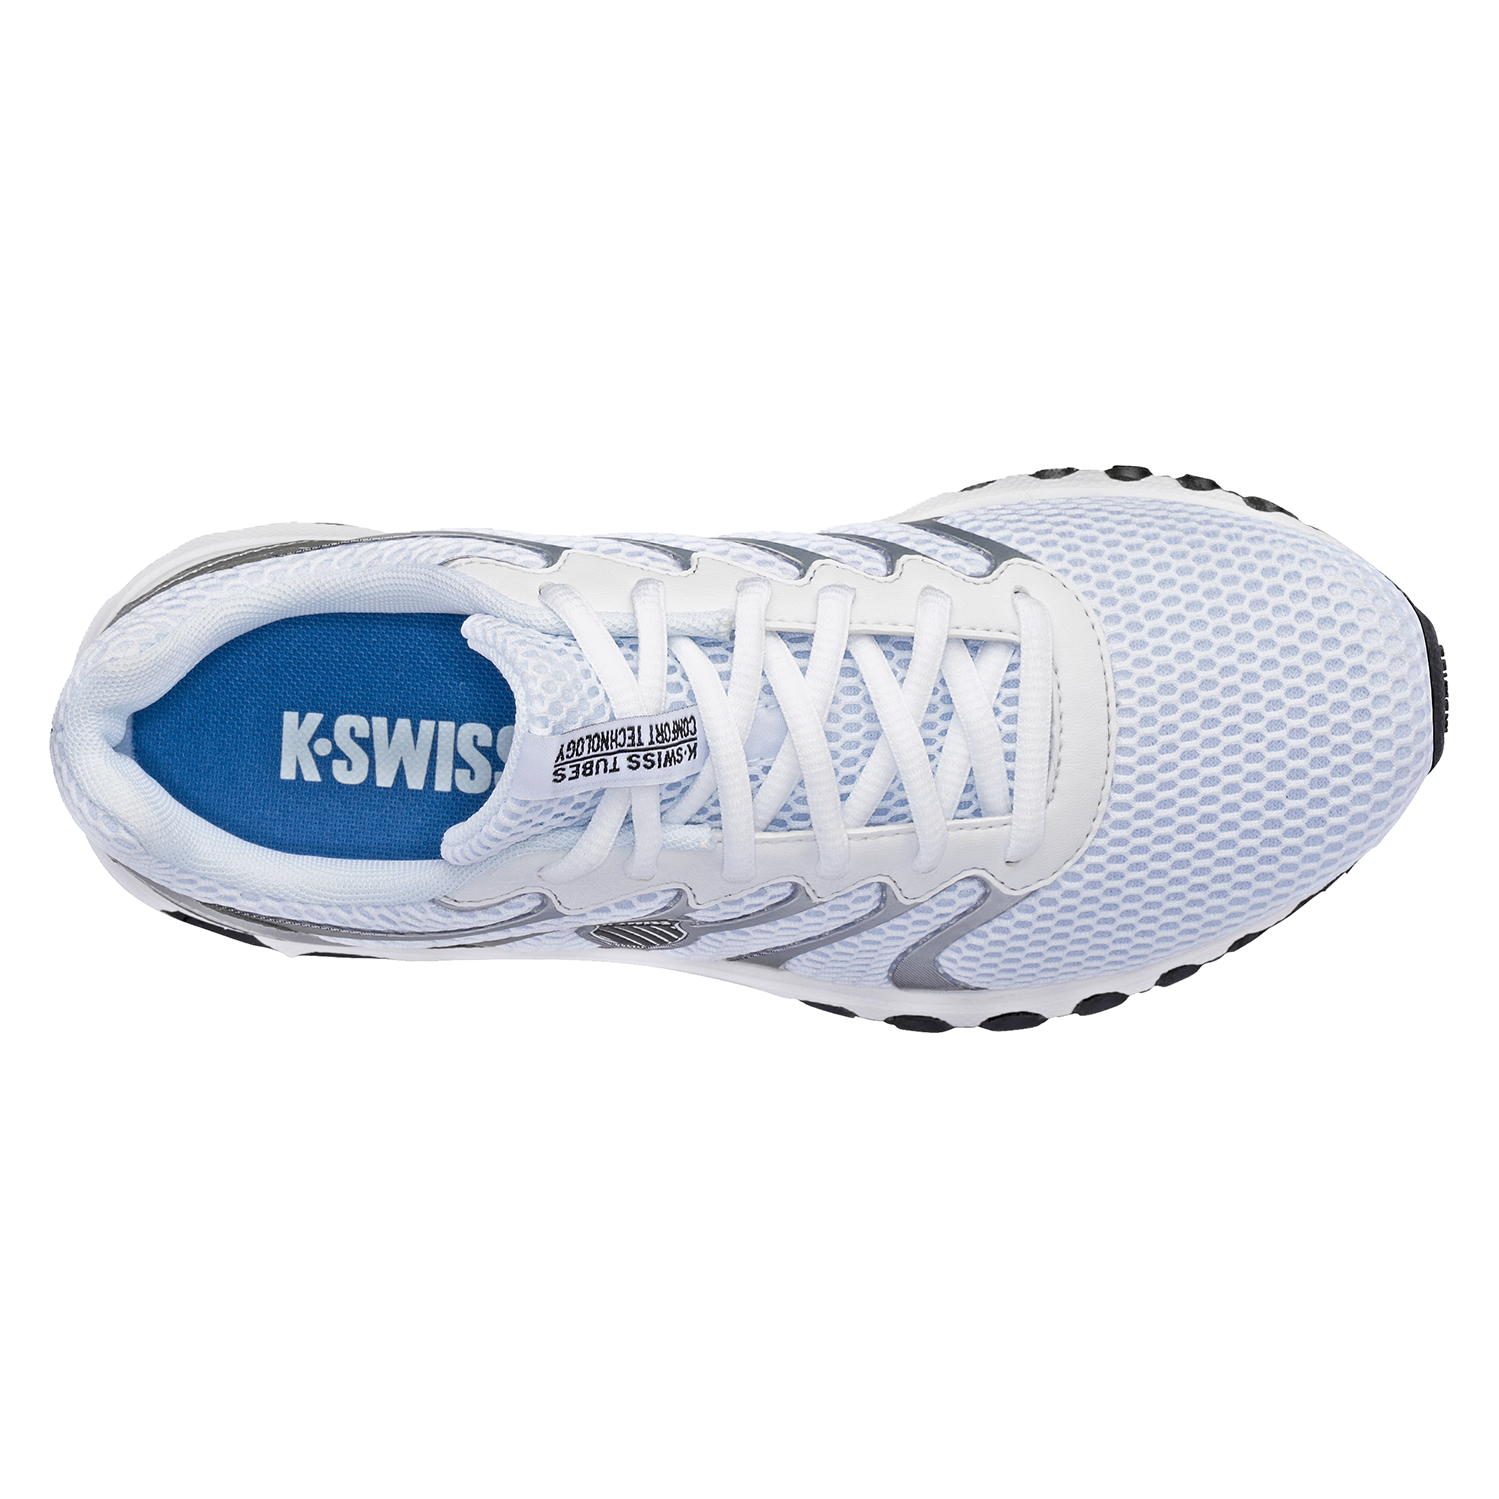 K-SWISS TUBES Comfort 200 Damen Sneaker Sportschuhe 97112 Weiß